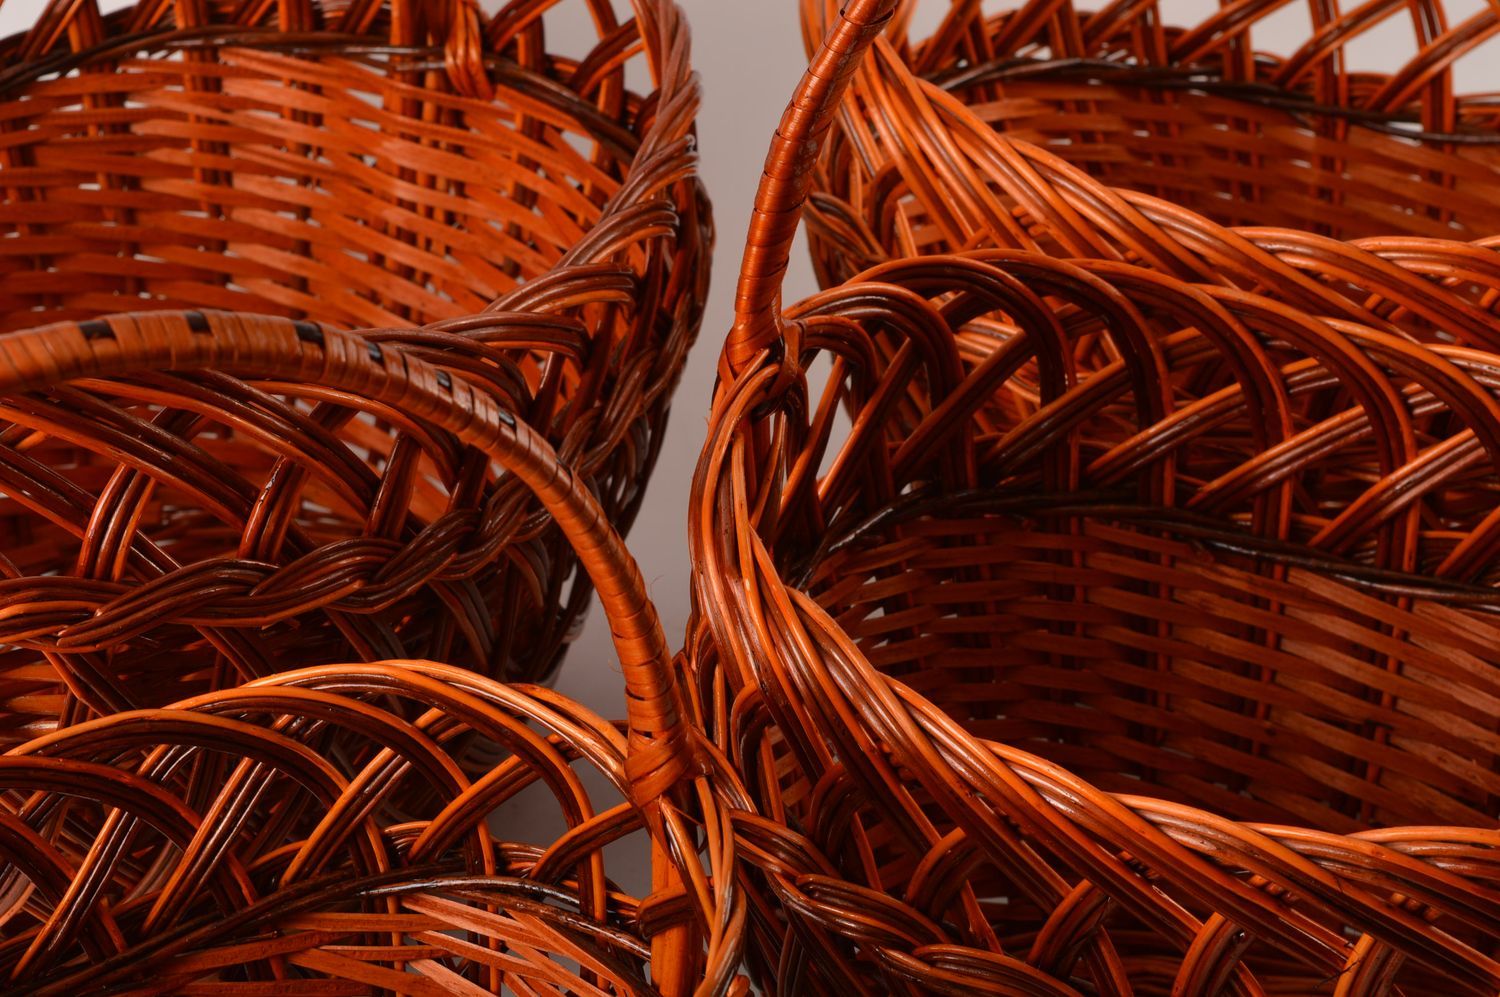 Handmade designer woven baskets 4 baskets for Easter decorative baskets photo 3